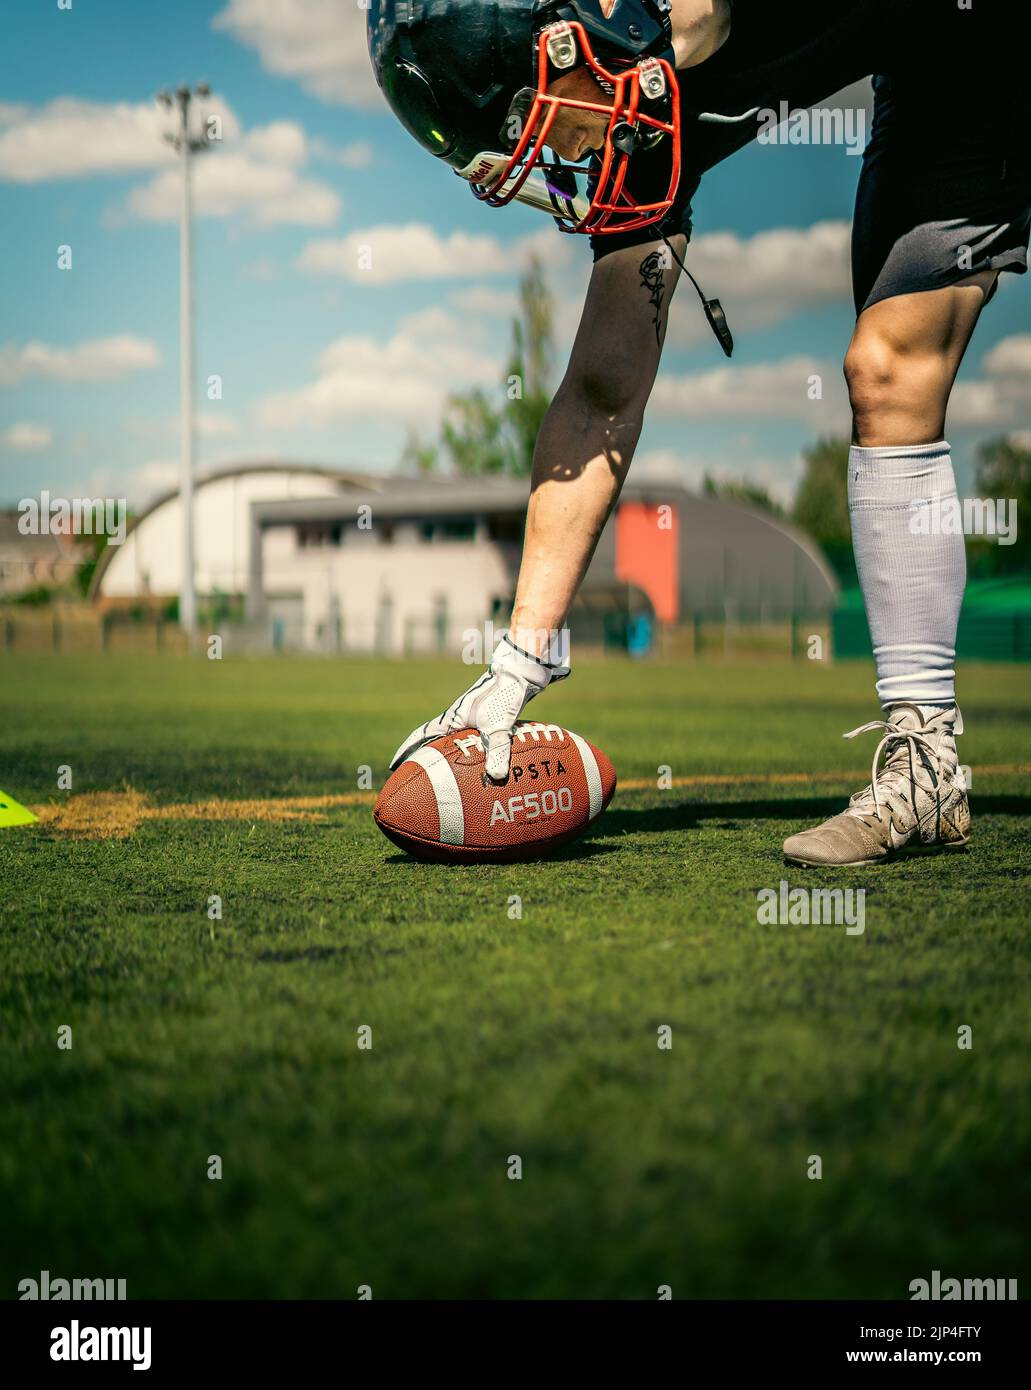 Un footballeur américain qui met un kipsta sur le terrain synthétique avec des gants Nike blancs Banque D'Images